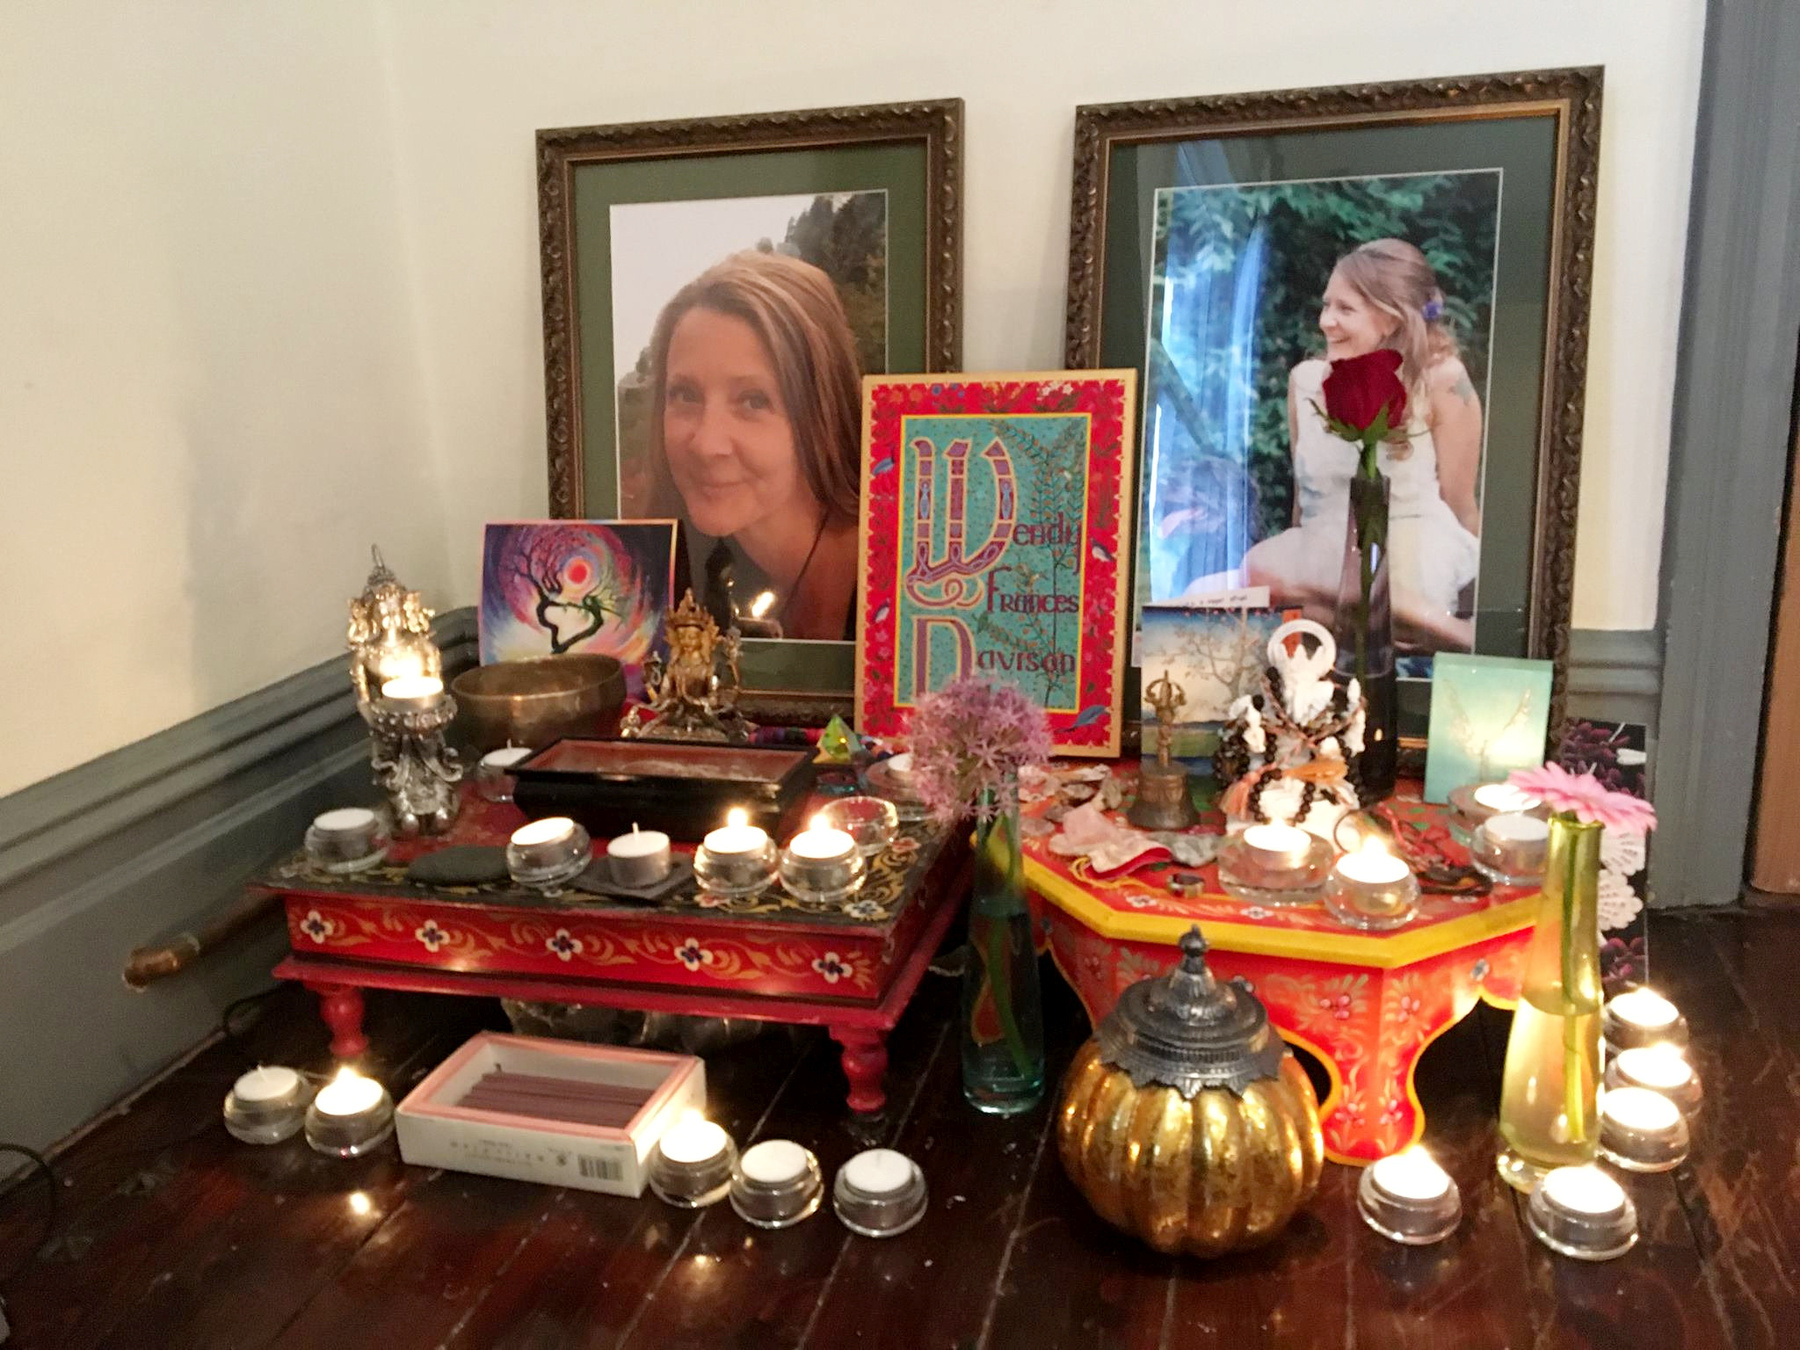 Az oltár, amit Wendy halála tiszteletére készítettek a család otthonában.